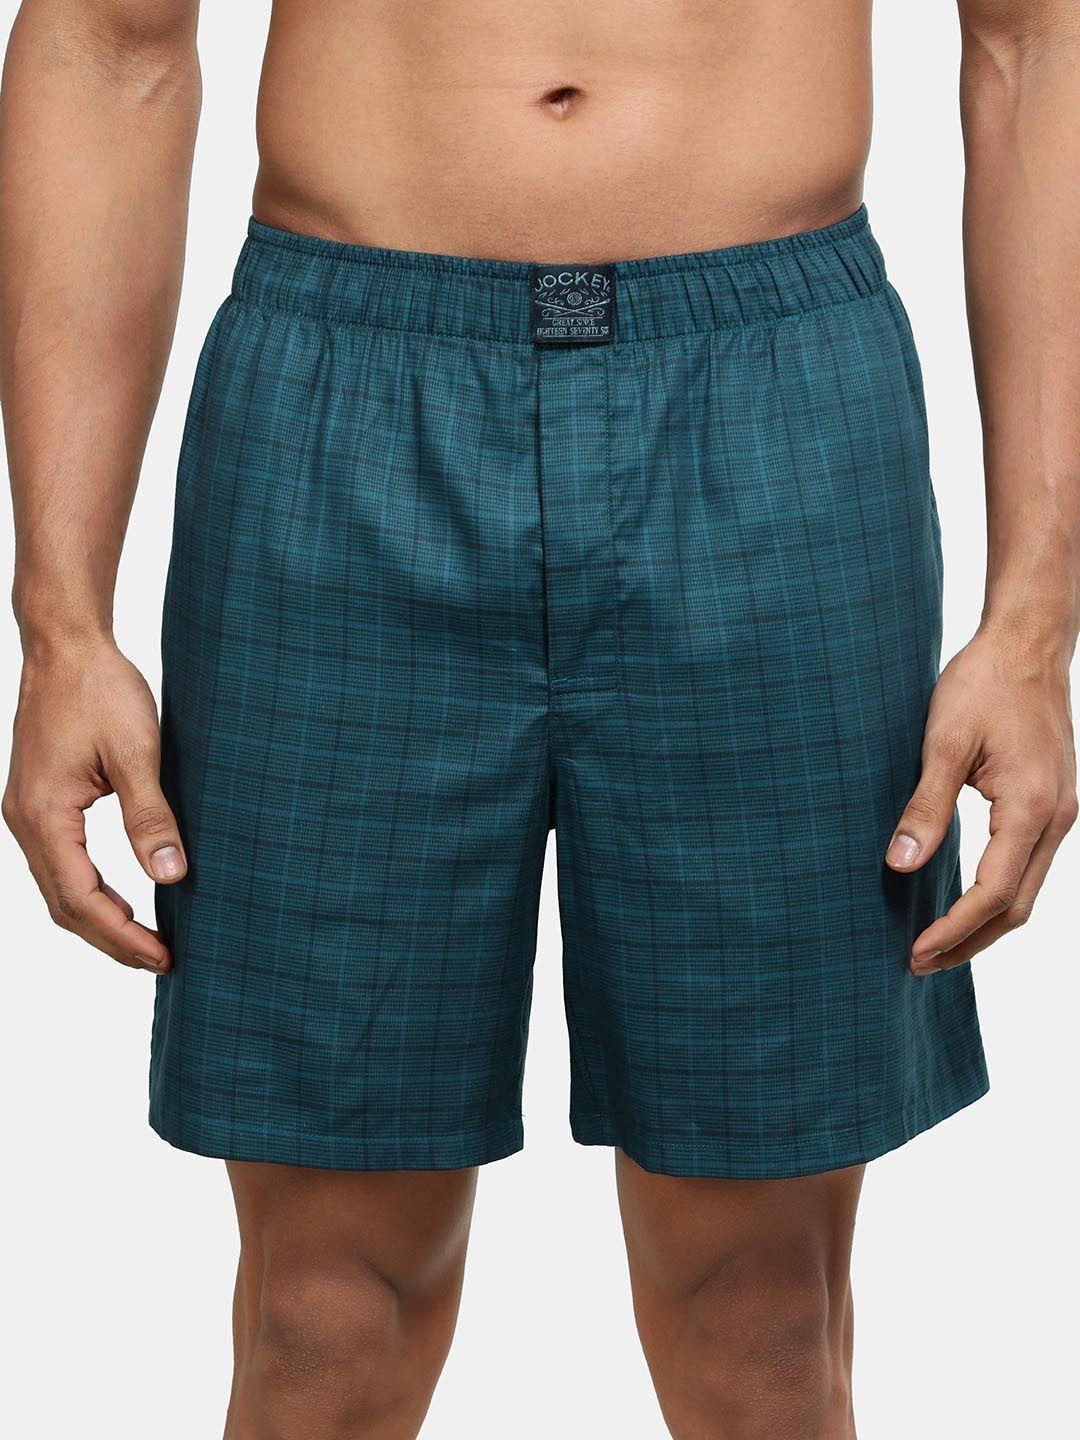 jockey-men-poseidon-checkered-boxer-shorts